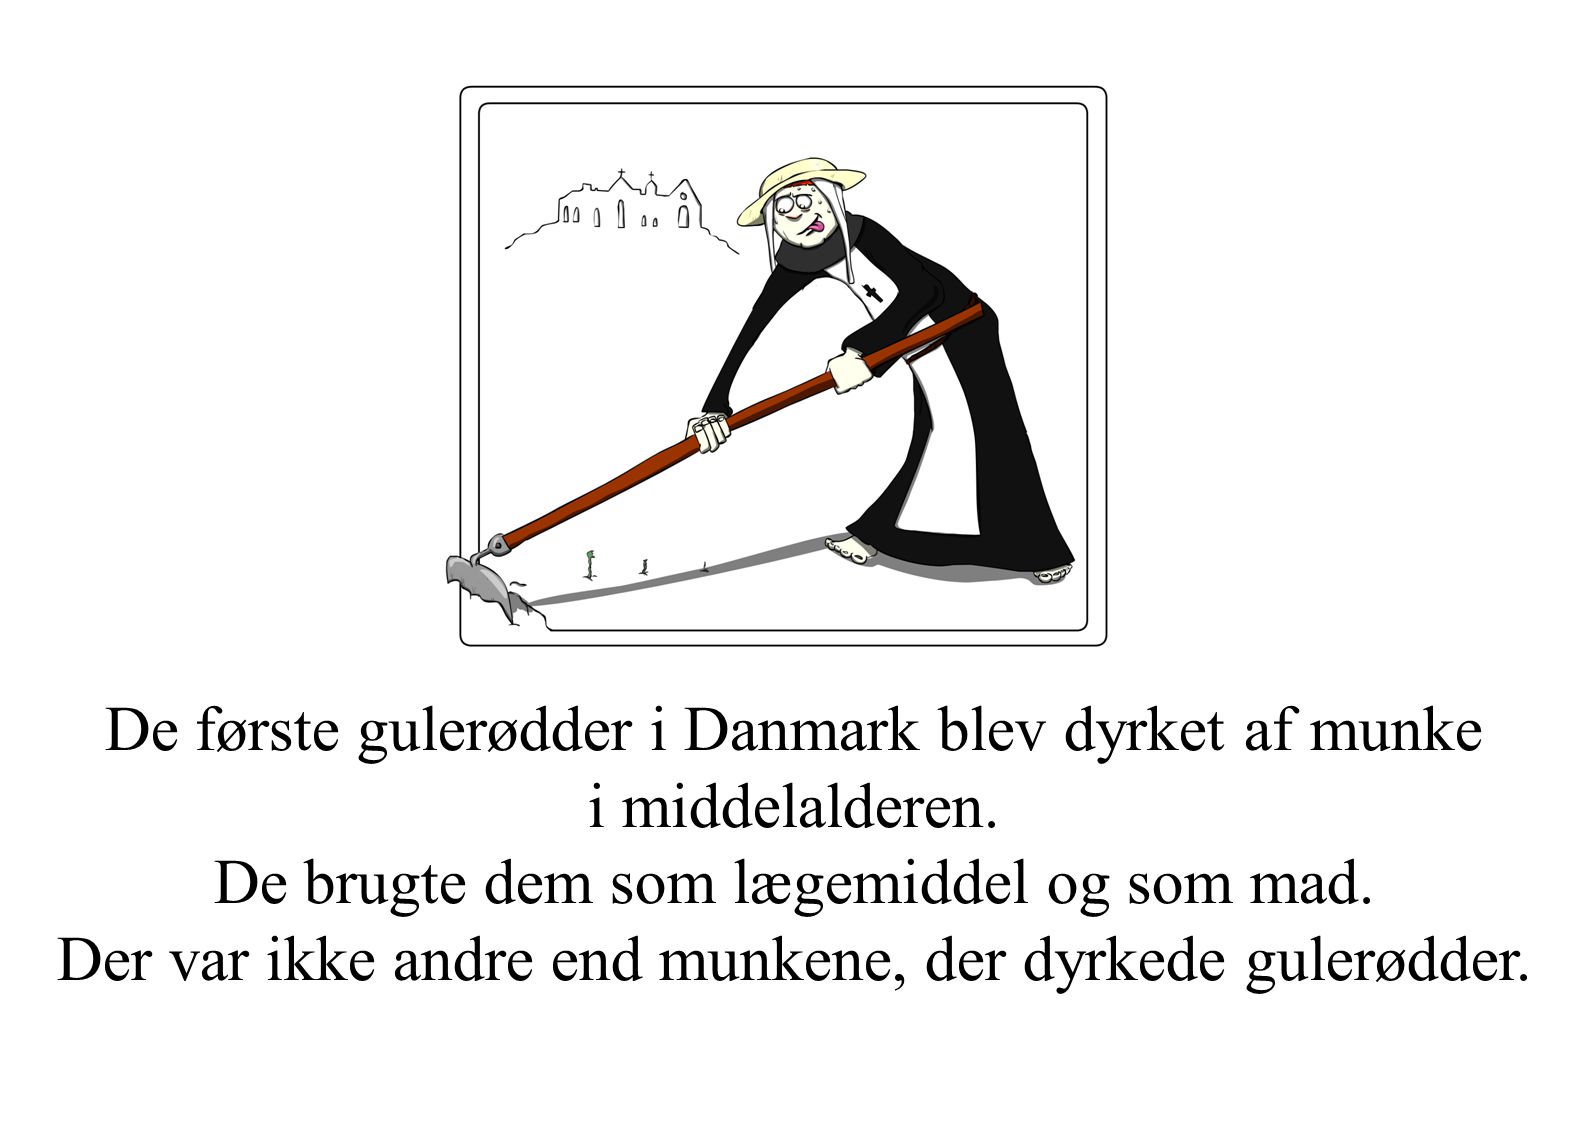 De første gulerødder i Danmark blev dyrket af munke i middelalderen